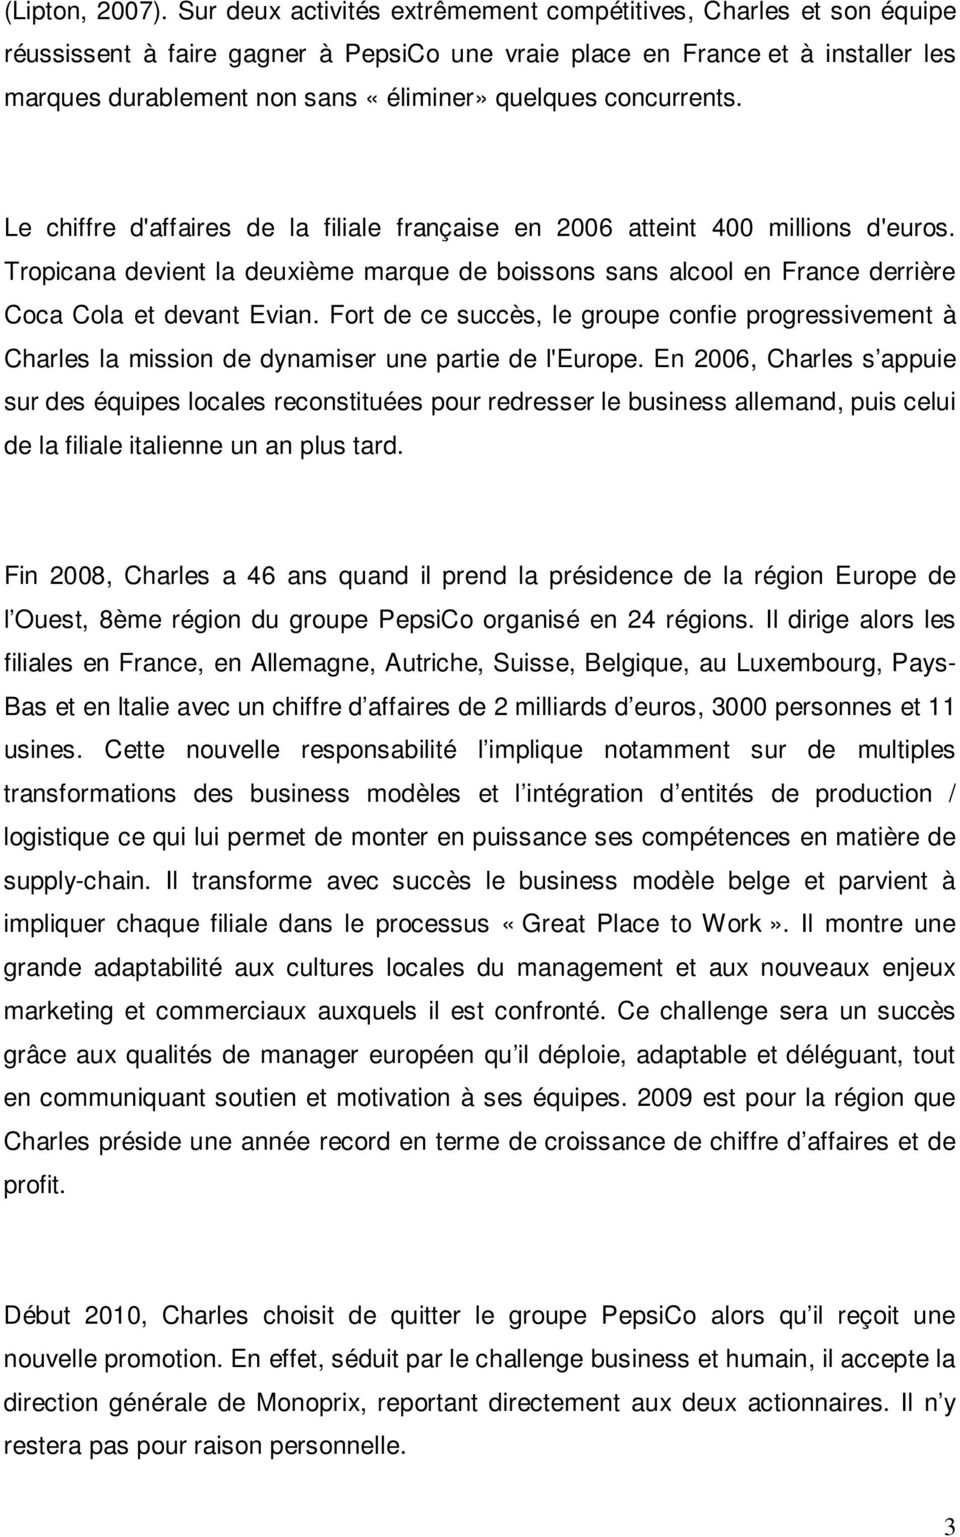 concurrents. Le chiffre d'affaires de la filiale française en 2006 atteint 400 millions d'euros.